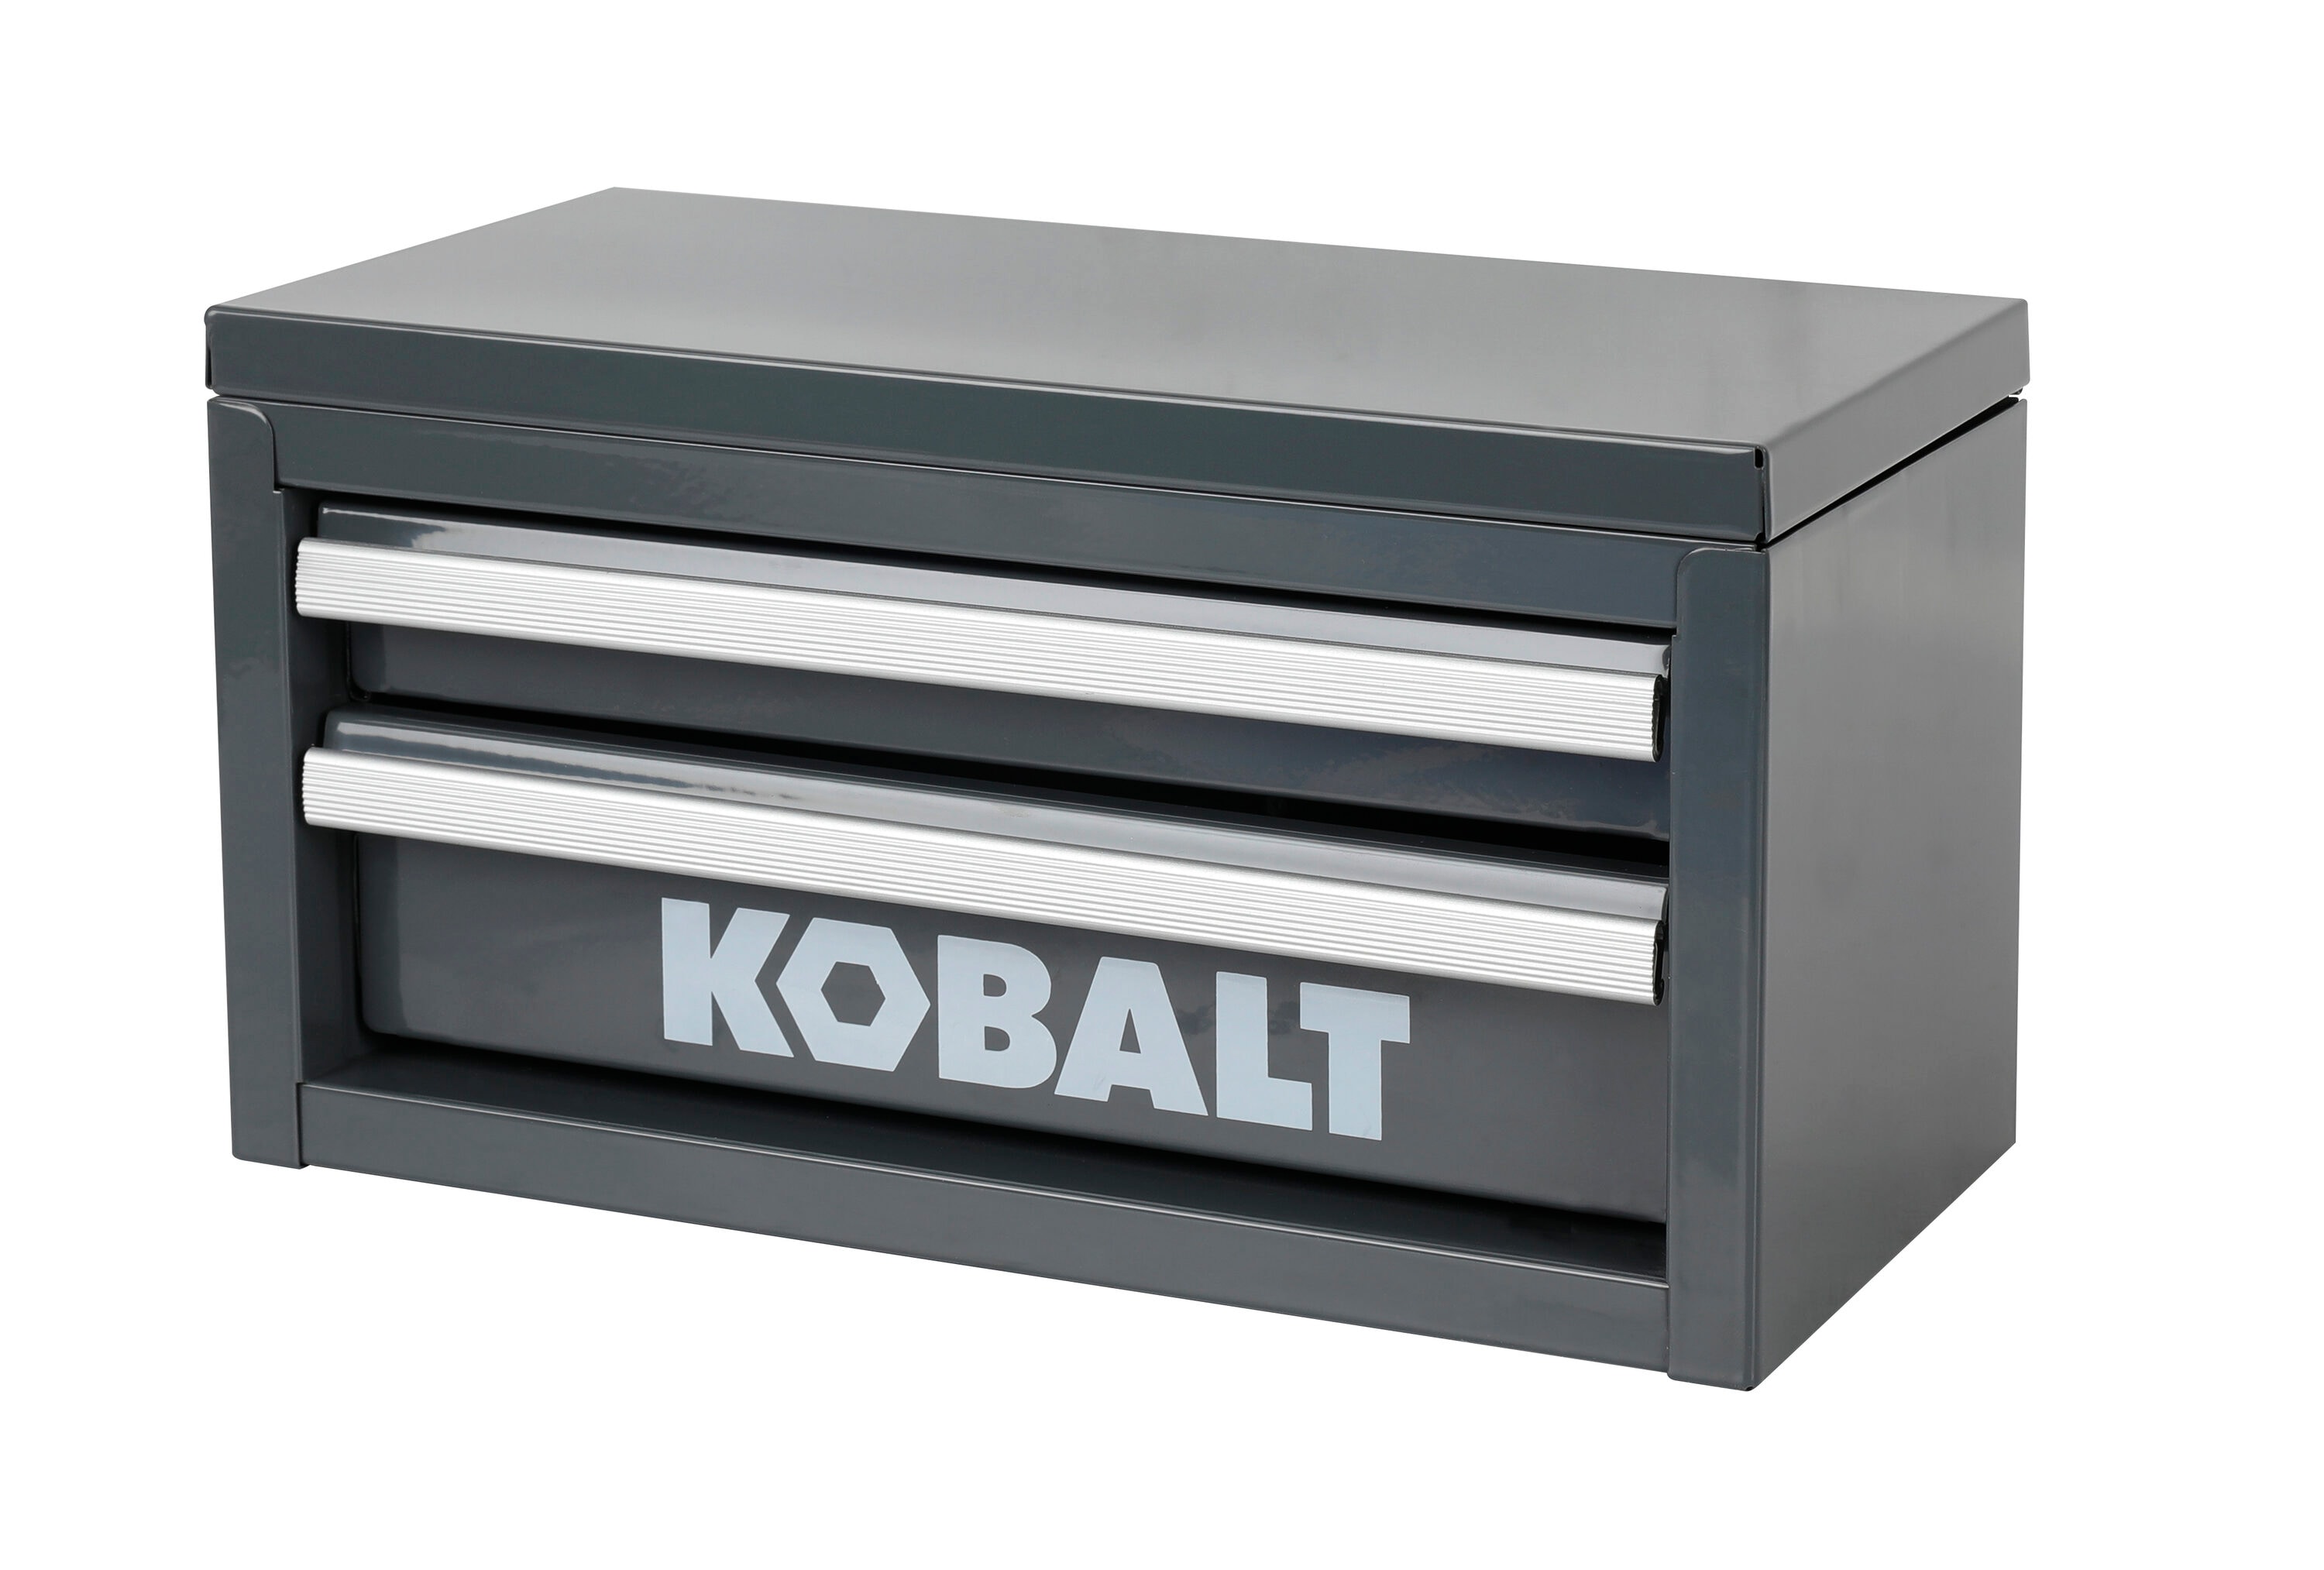 Kobalt 54421